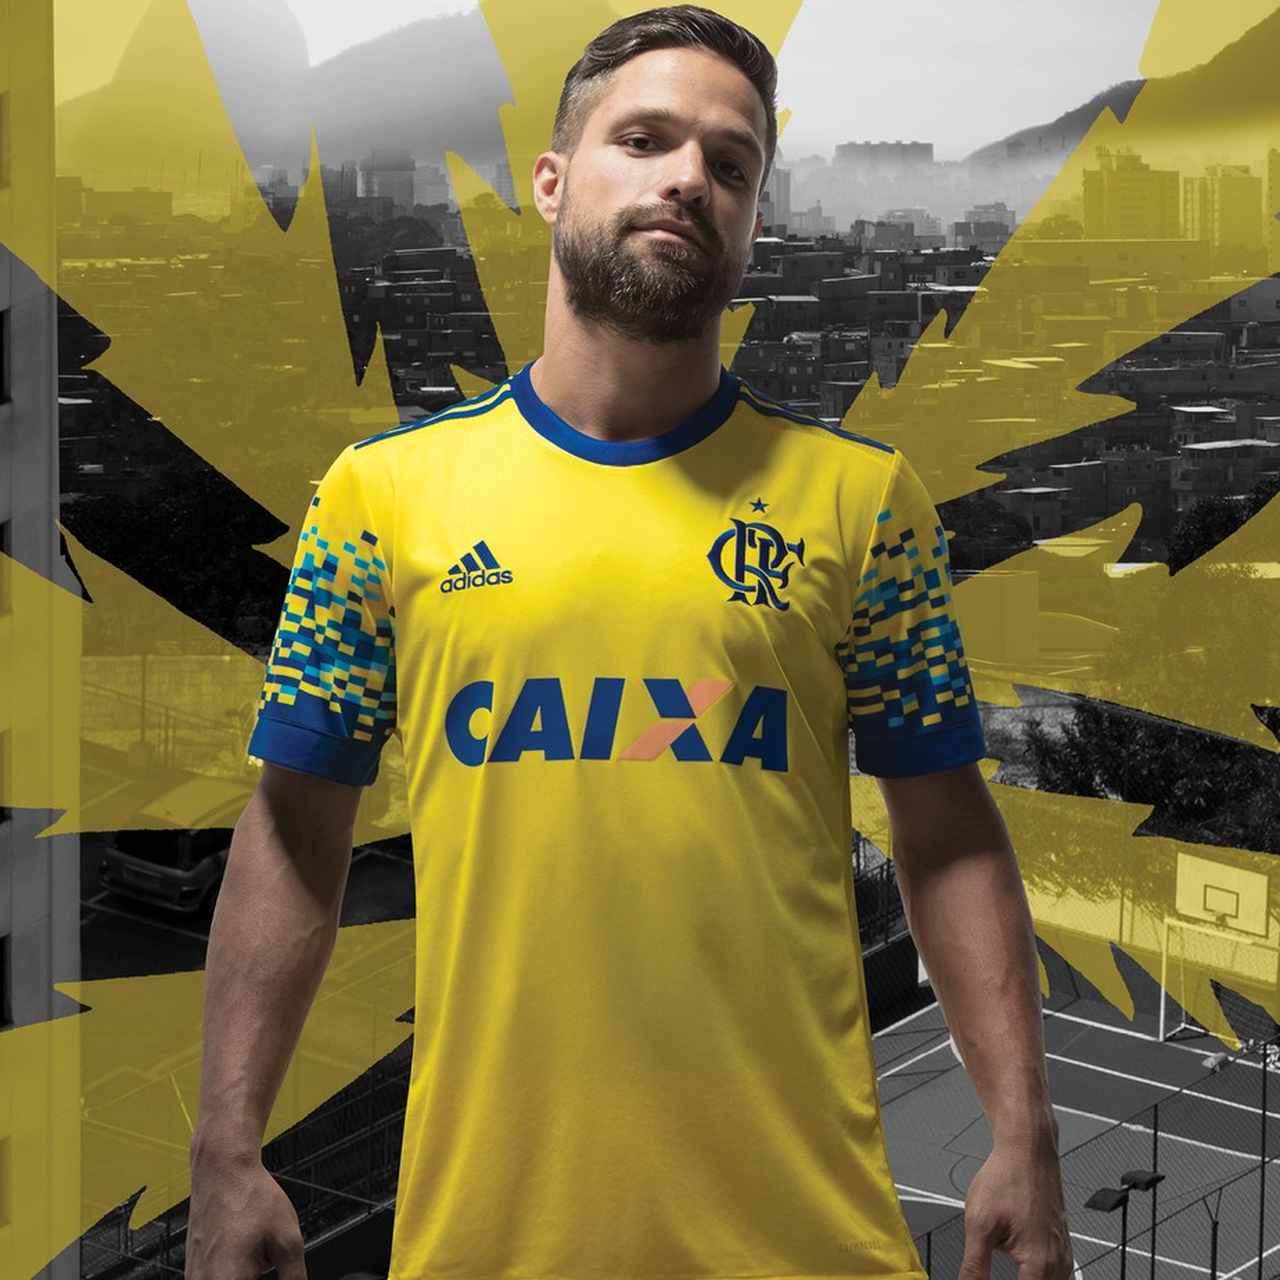 FLAMENGO: O Flamengo já havia entrado em iniciativa semelhante, porém, por intermédio da Adidas. Aconteceu em 2017, quando a fabricante de material esportivo criou uma plataforma para esse fim. A camisa vencedora do Flamengo surpreendeu pelas cores, gerou comentários, mas esgotou tão logo foi lançada.